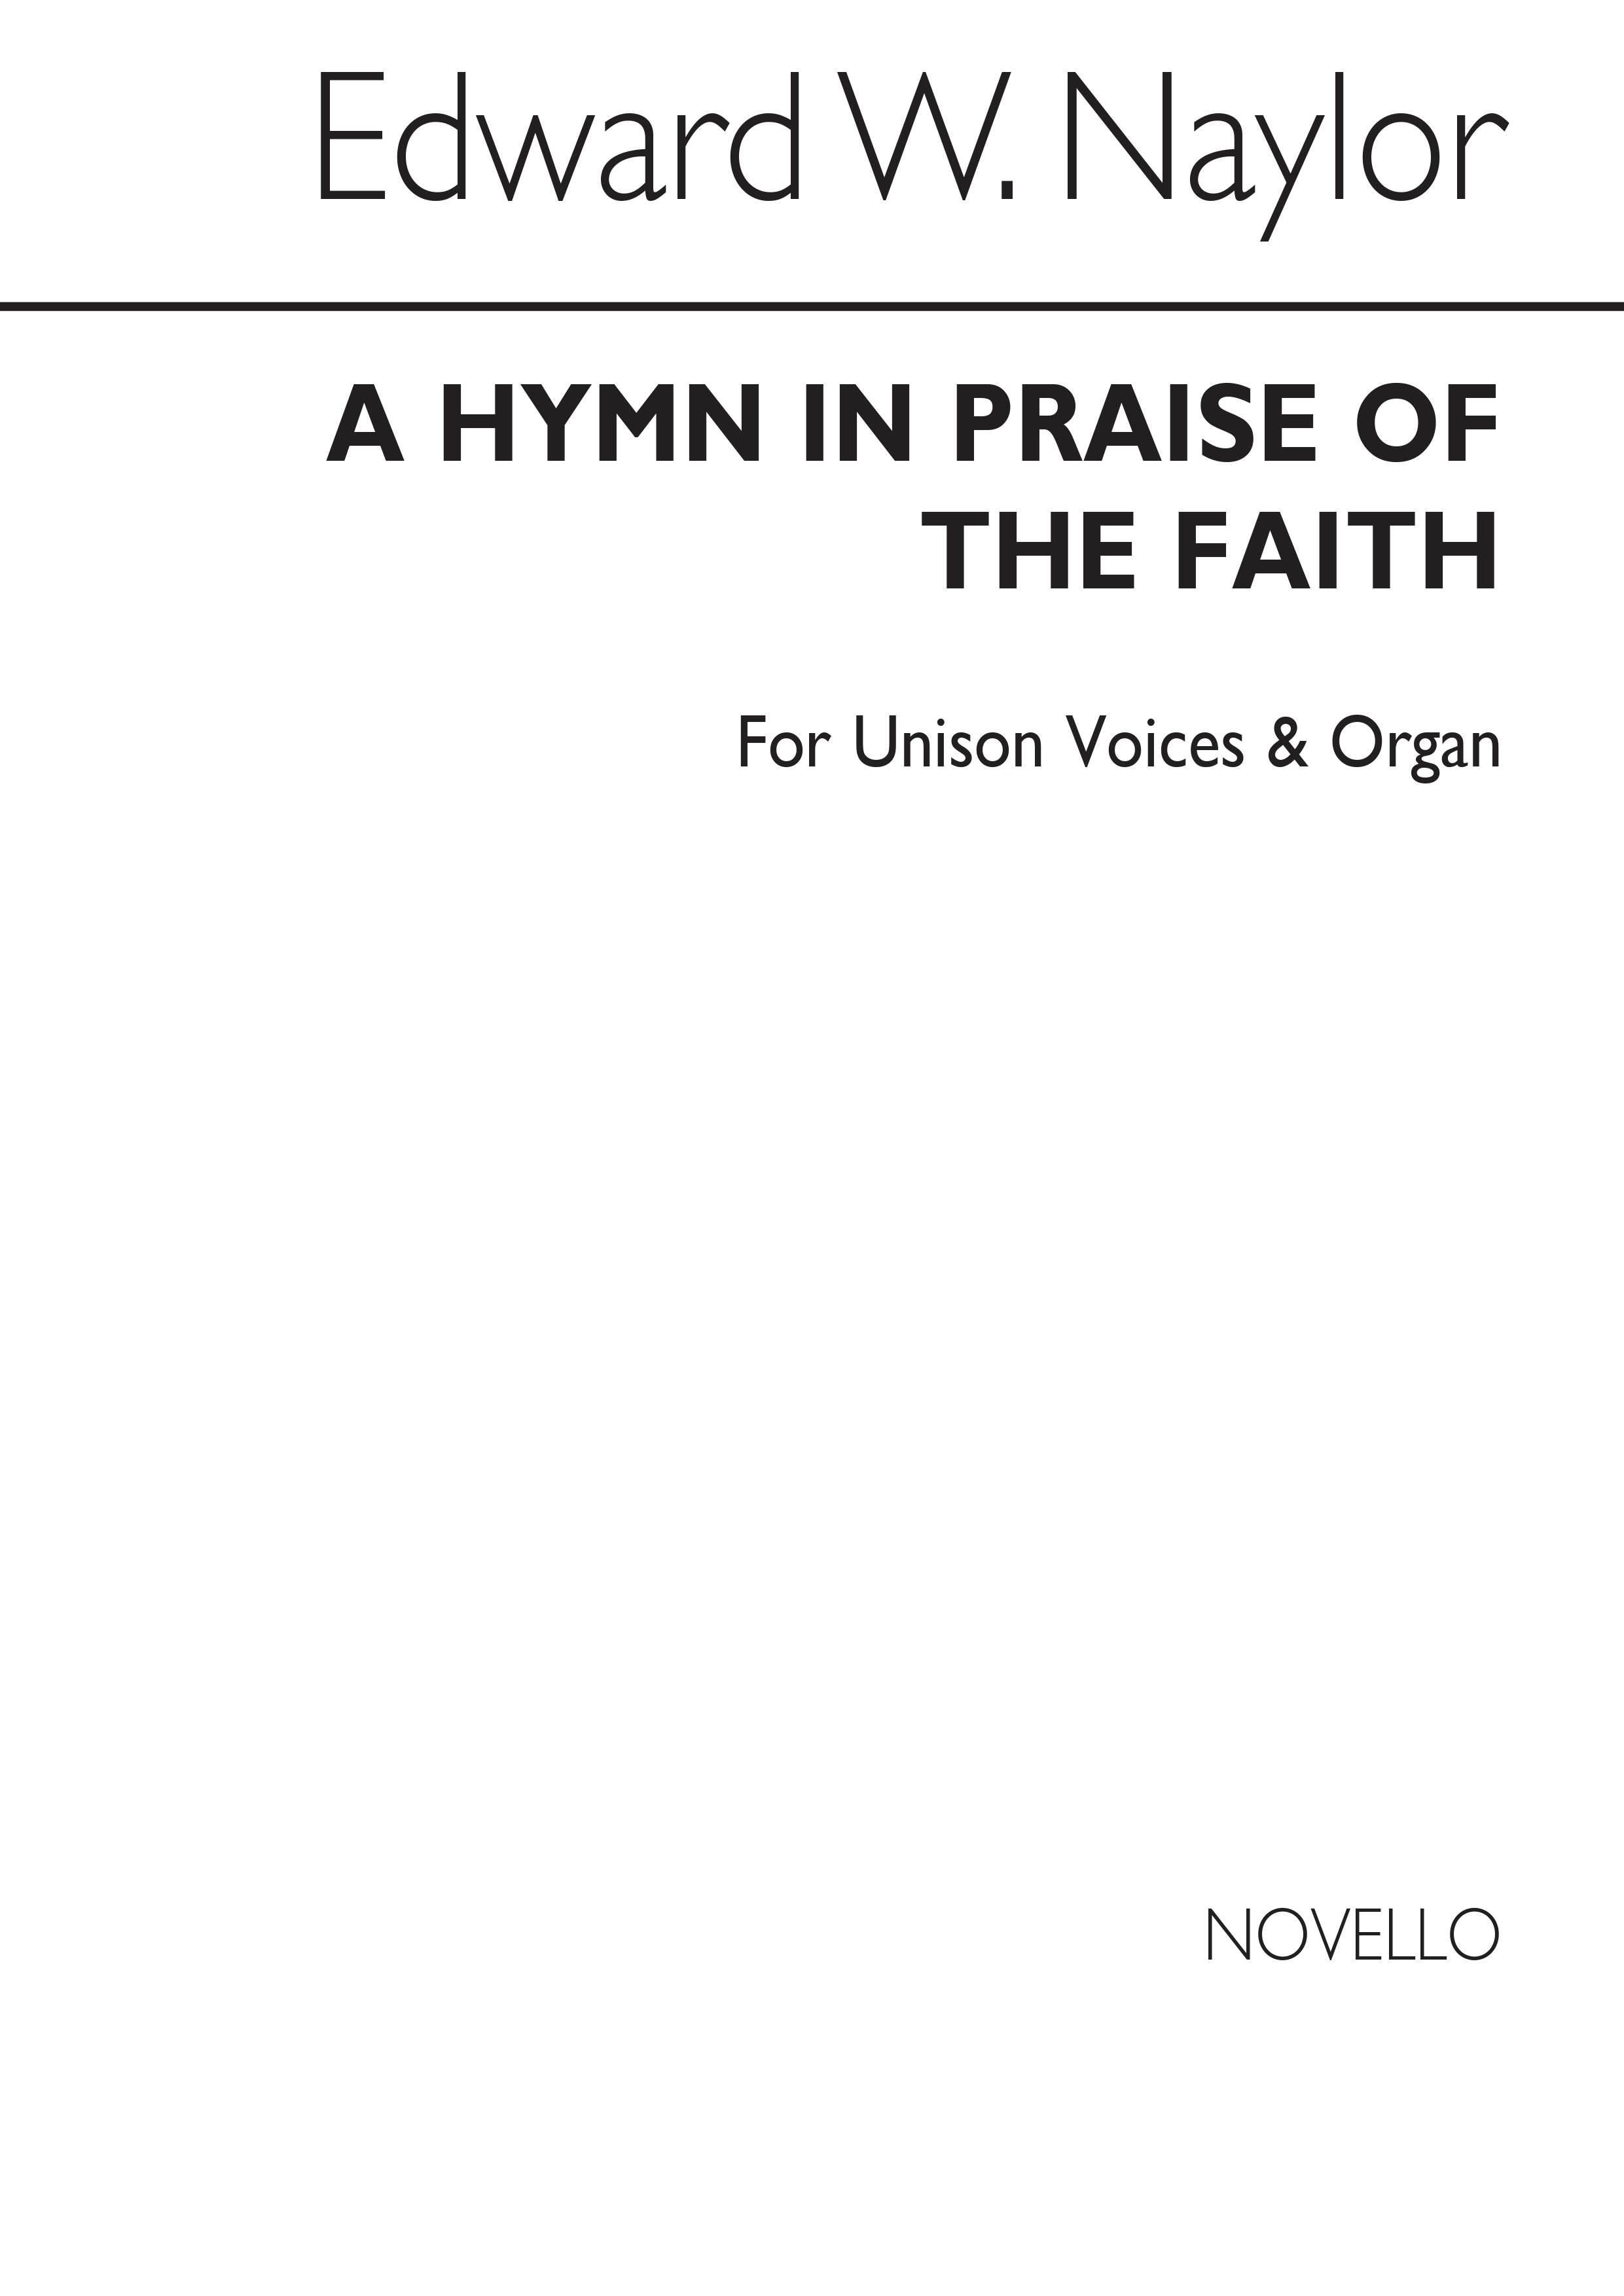 Edward W. Naylor: A Hymn In Praise Of The Faith